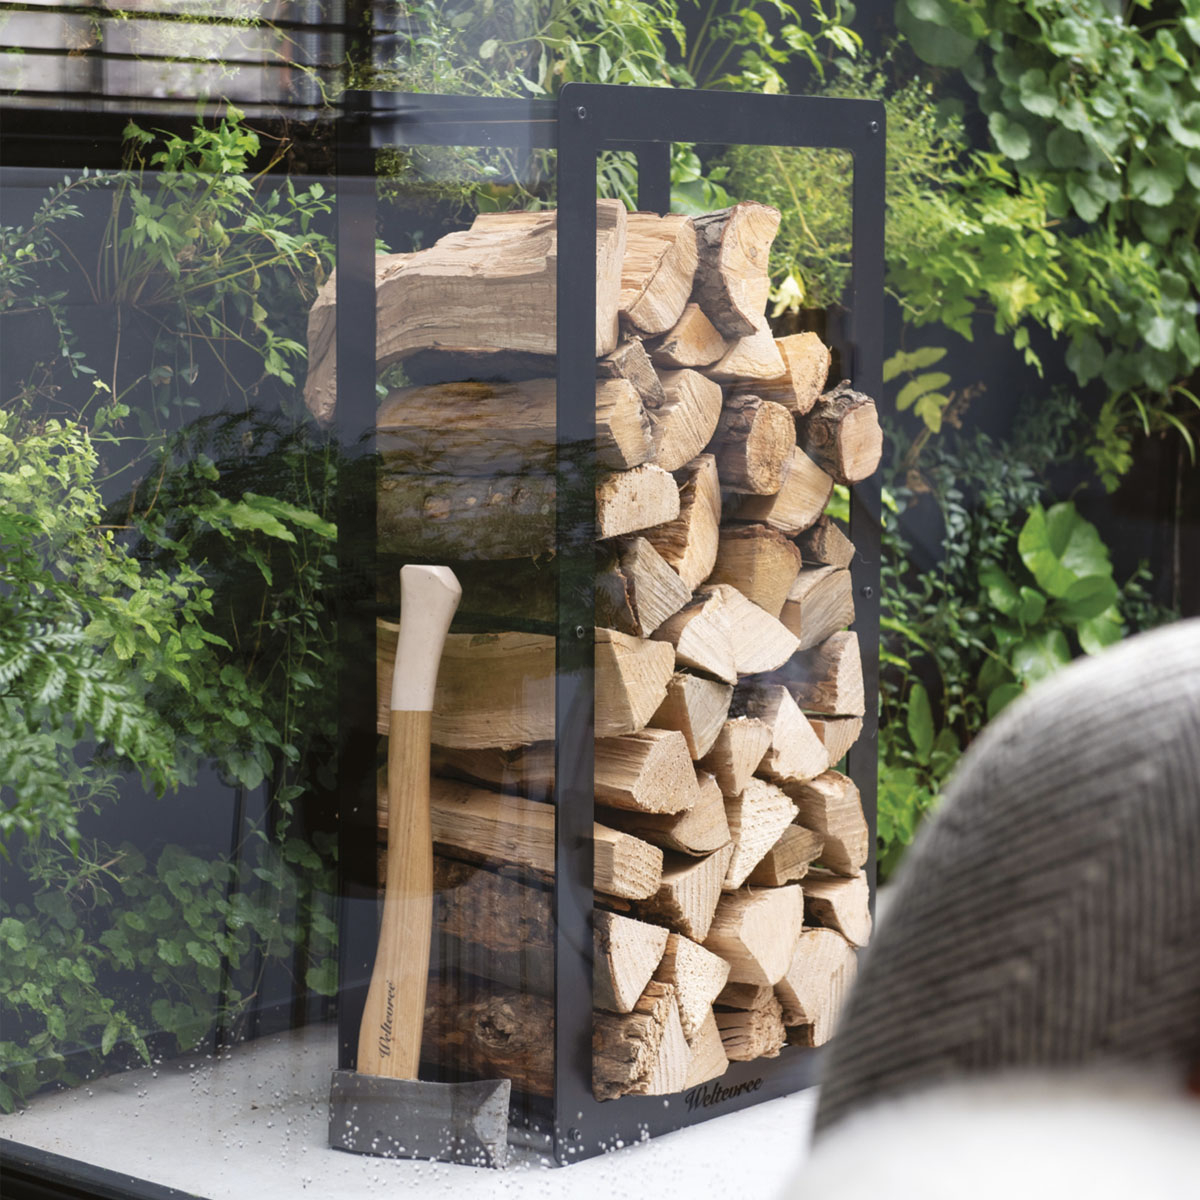 Weltevree Woodstock Frame, kann leicht durch Stapeln von Holzstämmen im Inneren des Rahmens gefüllt werden